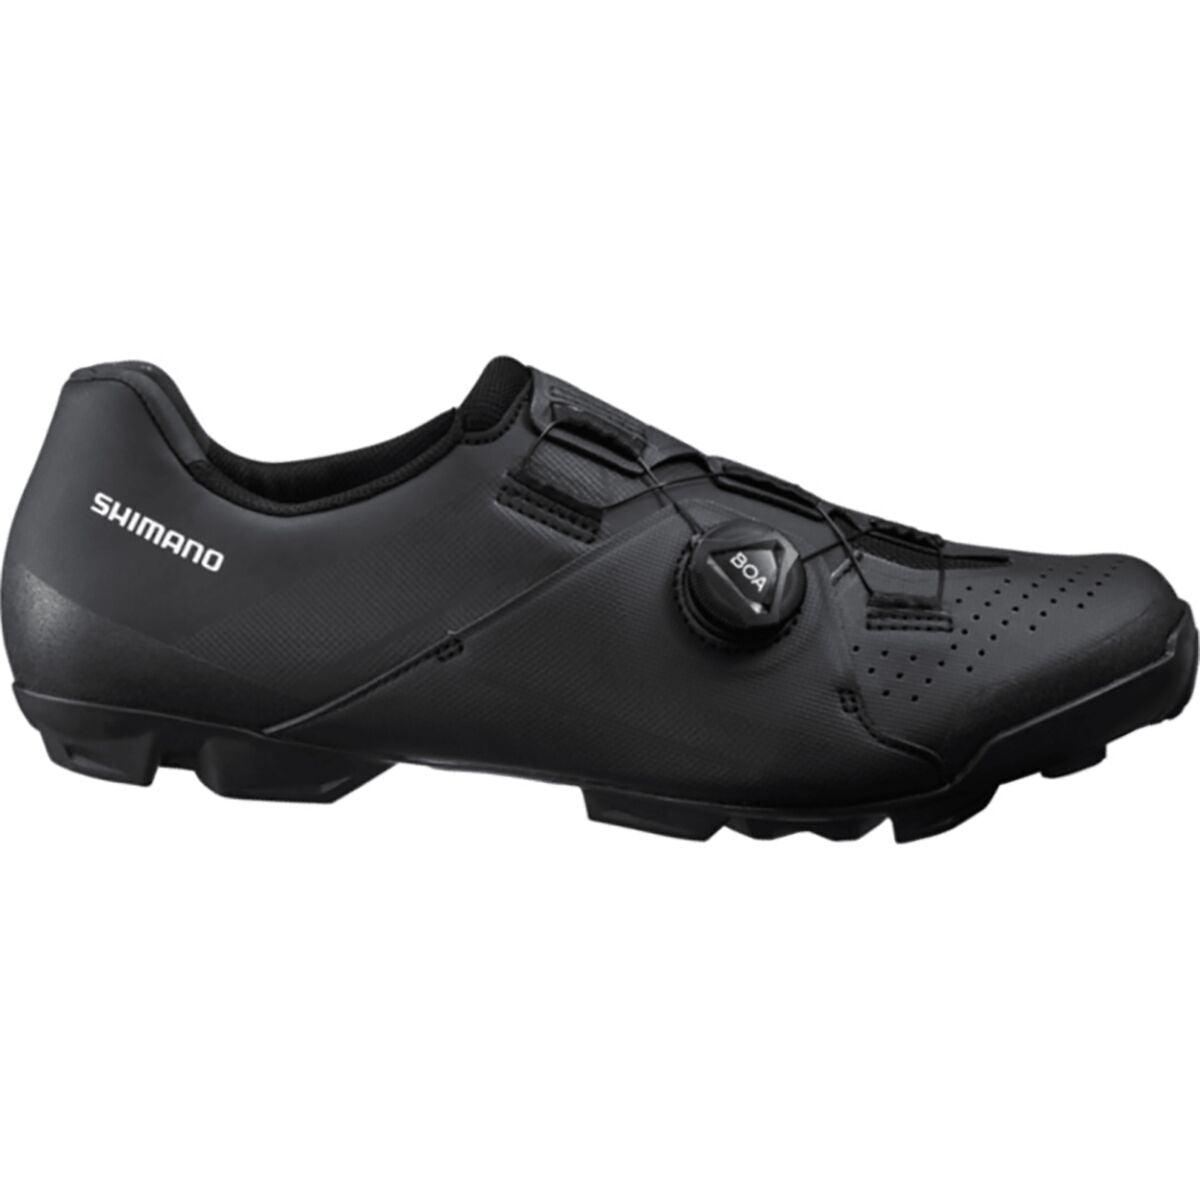 Photos - Cycling Shoes Shimano XC3 Mountain Bike Shoes - Black - 41 ESHXC300MGL01S4100G 